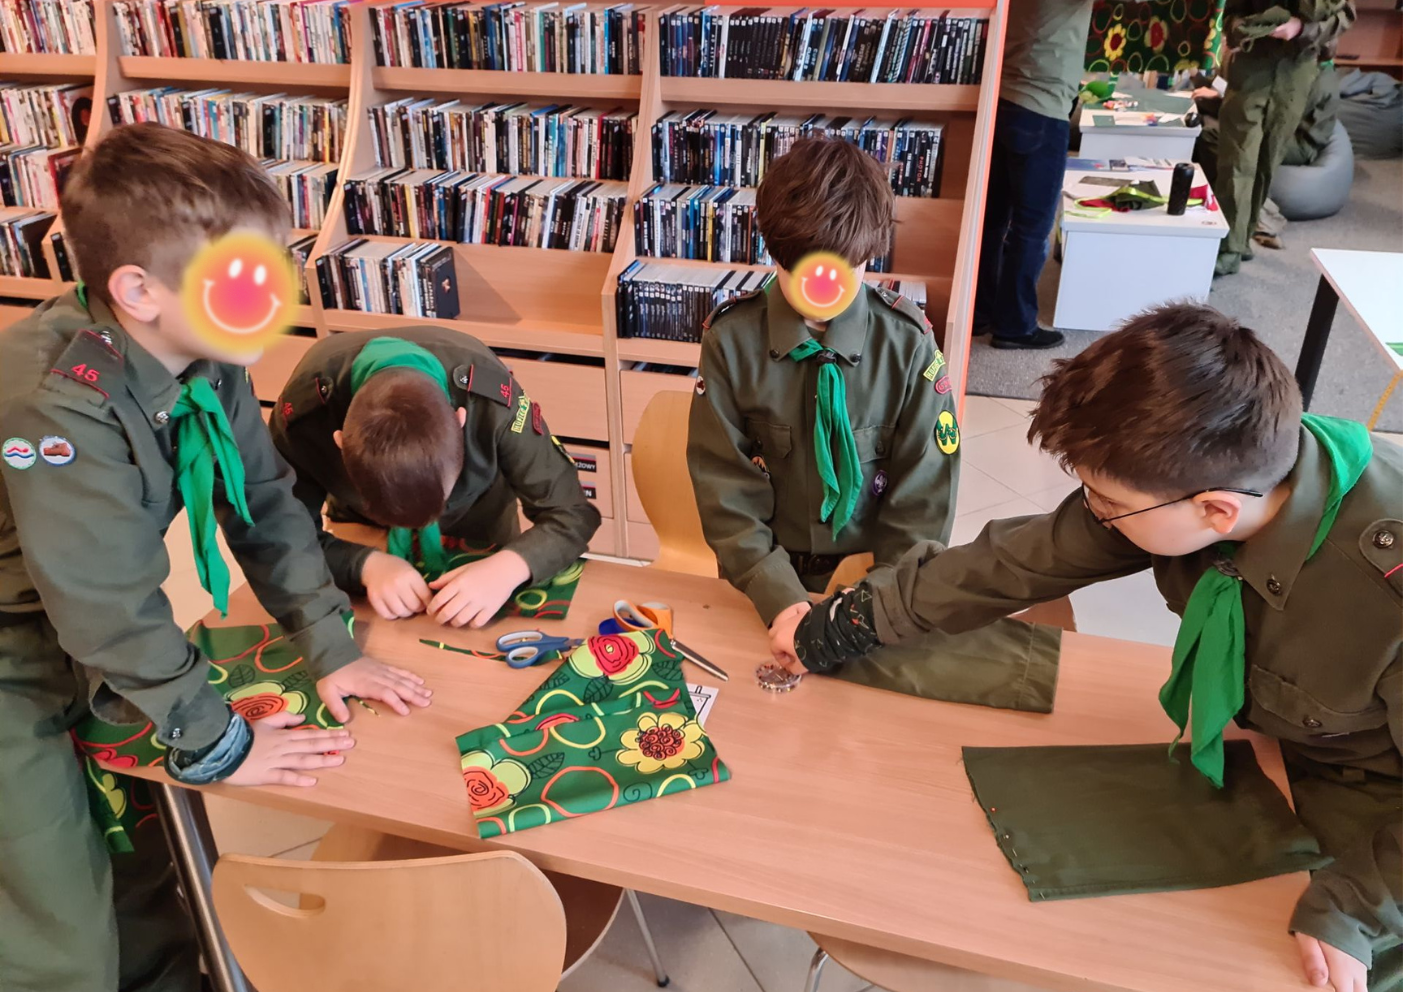 4 młodych chłopców w mundurach harcerskich spina szpilkami przy stole materiał do uszycia woreczków